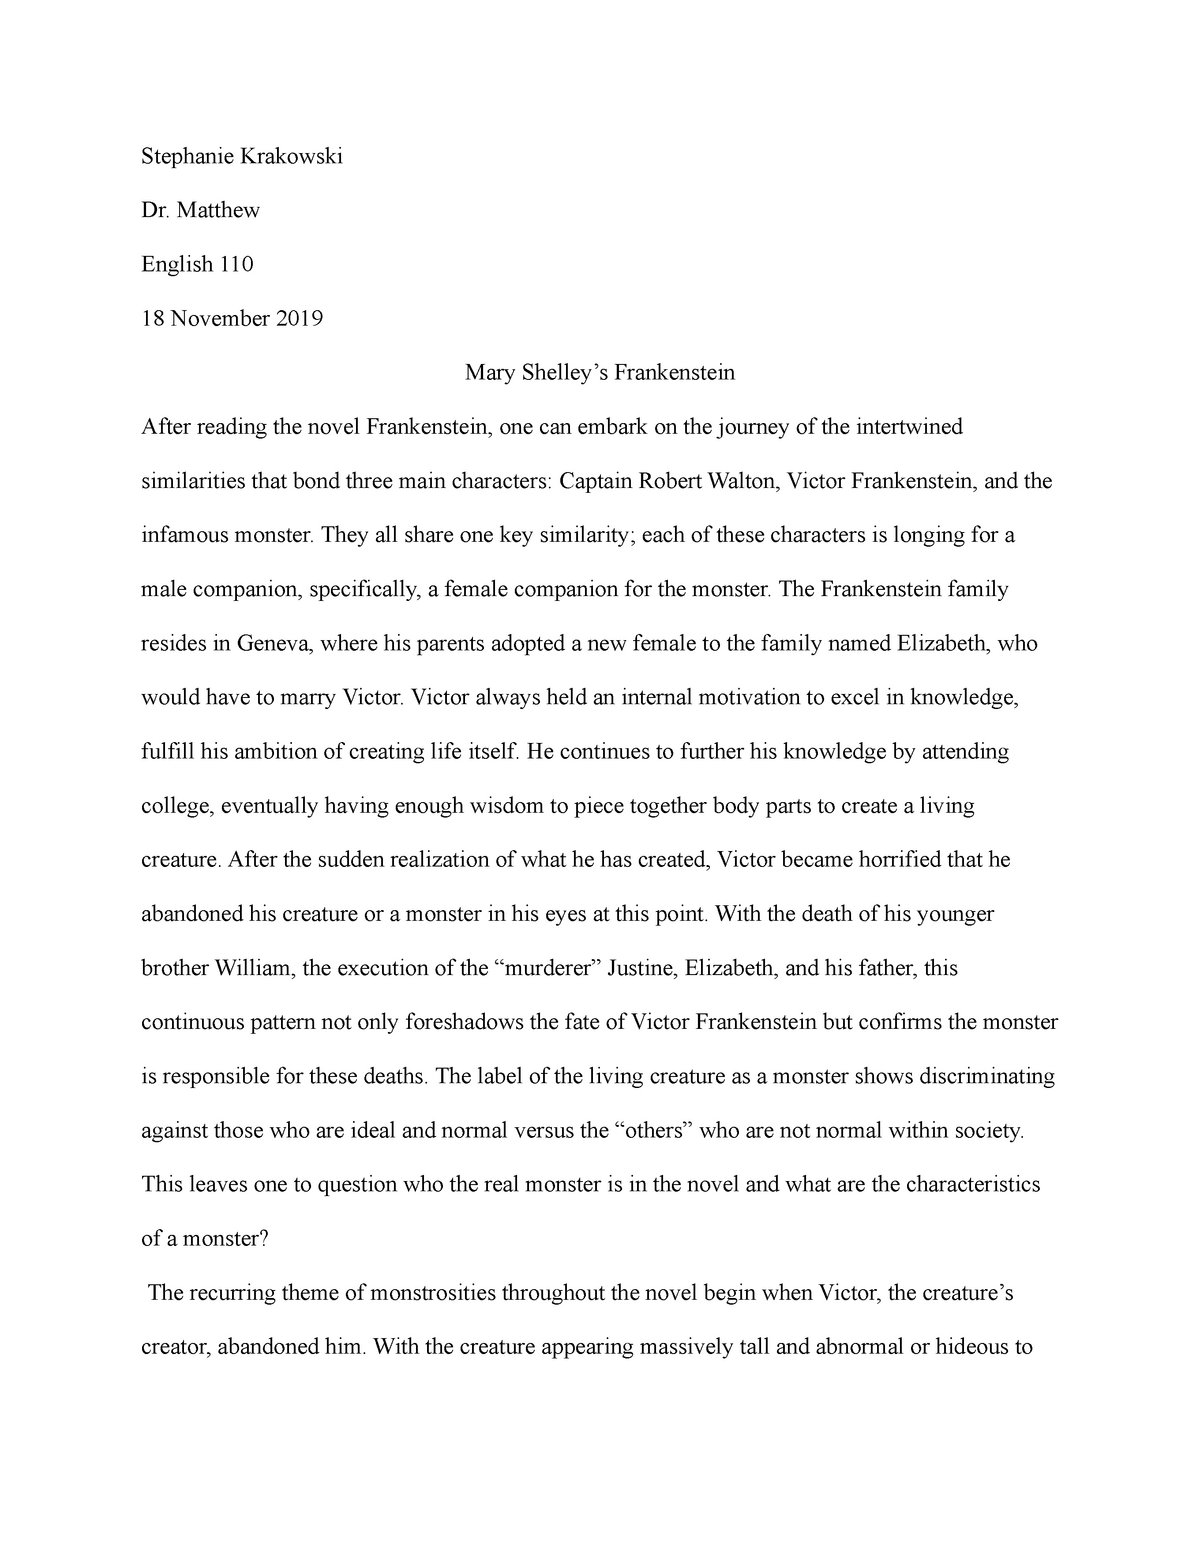 frankenstein essay introduction